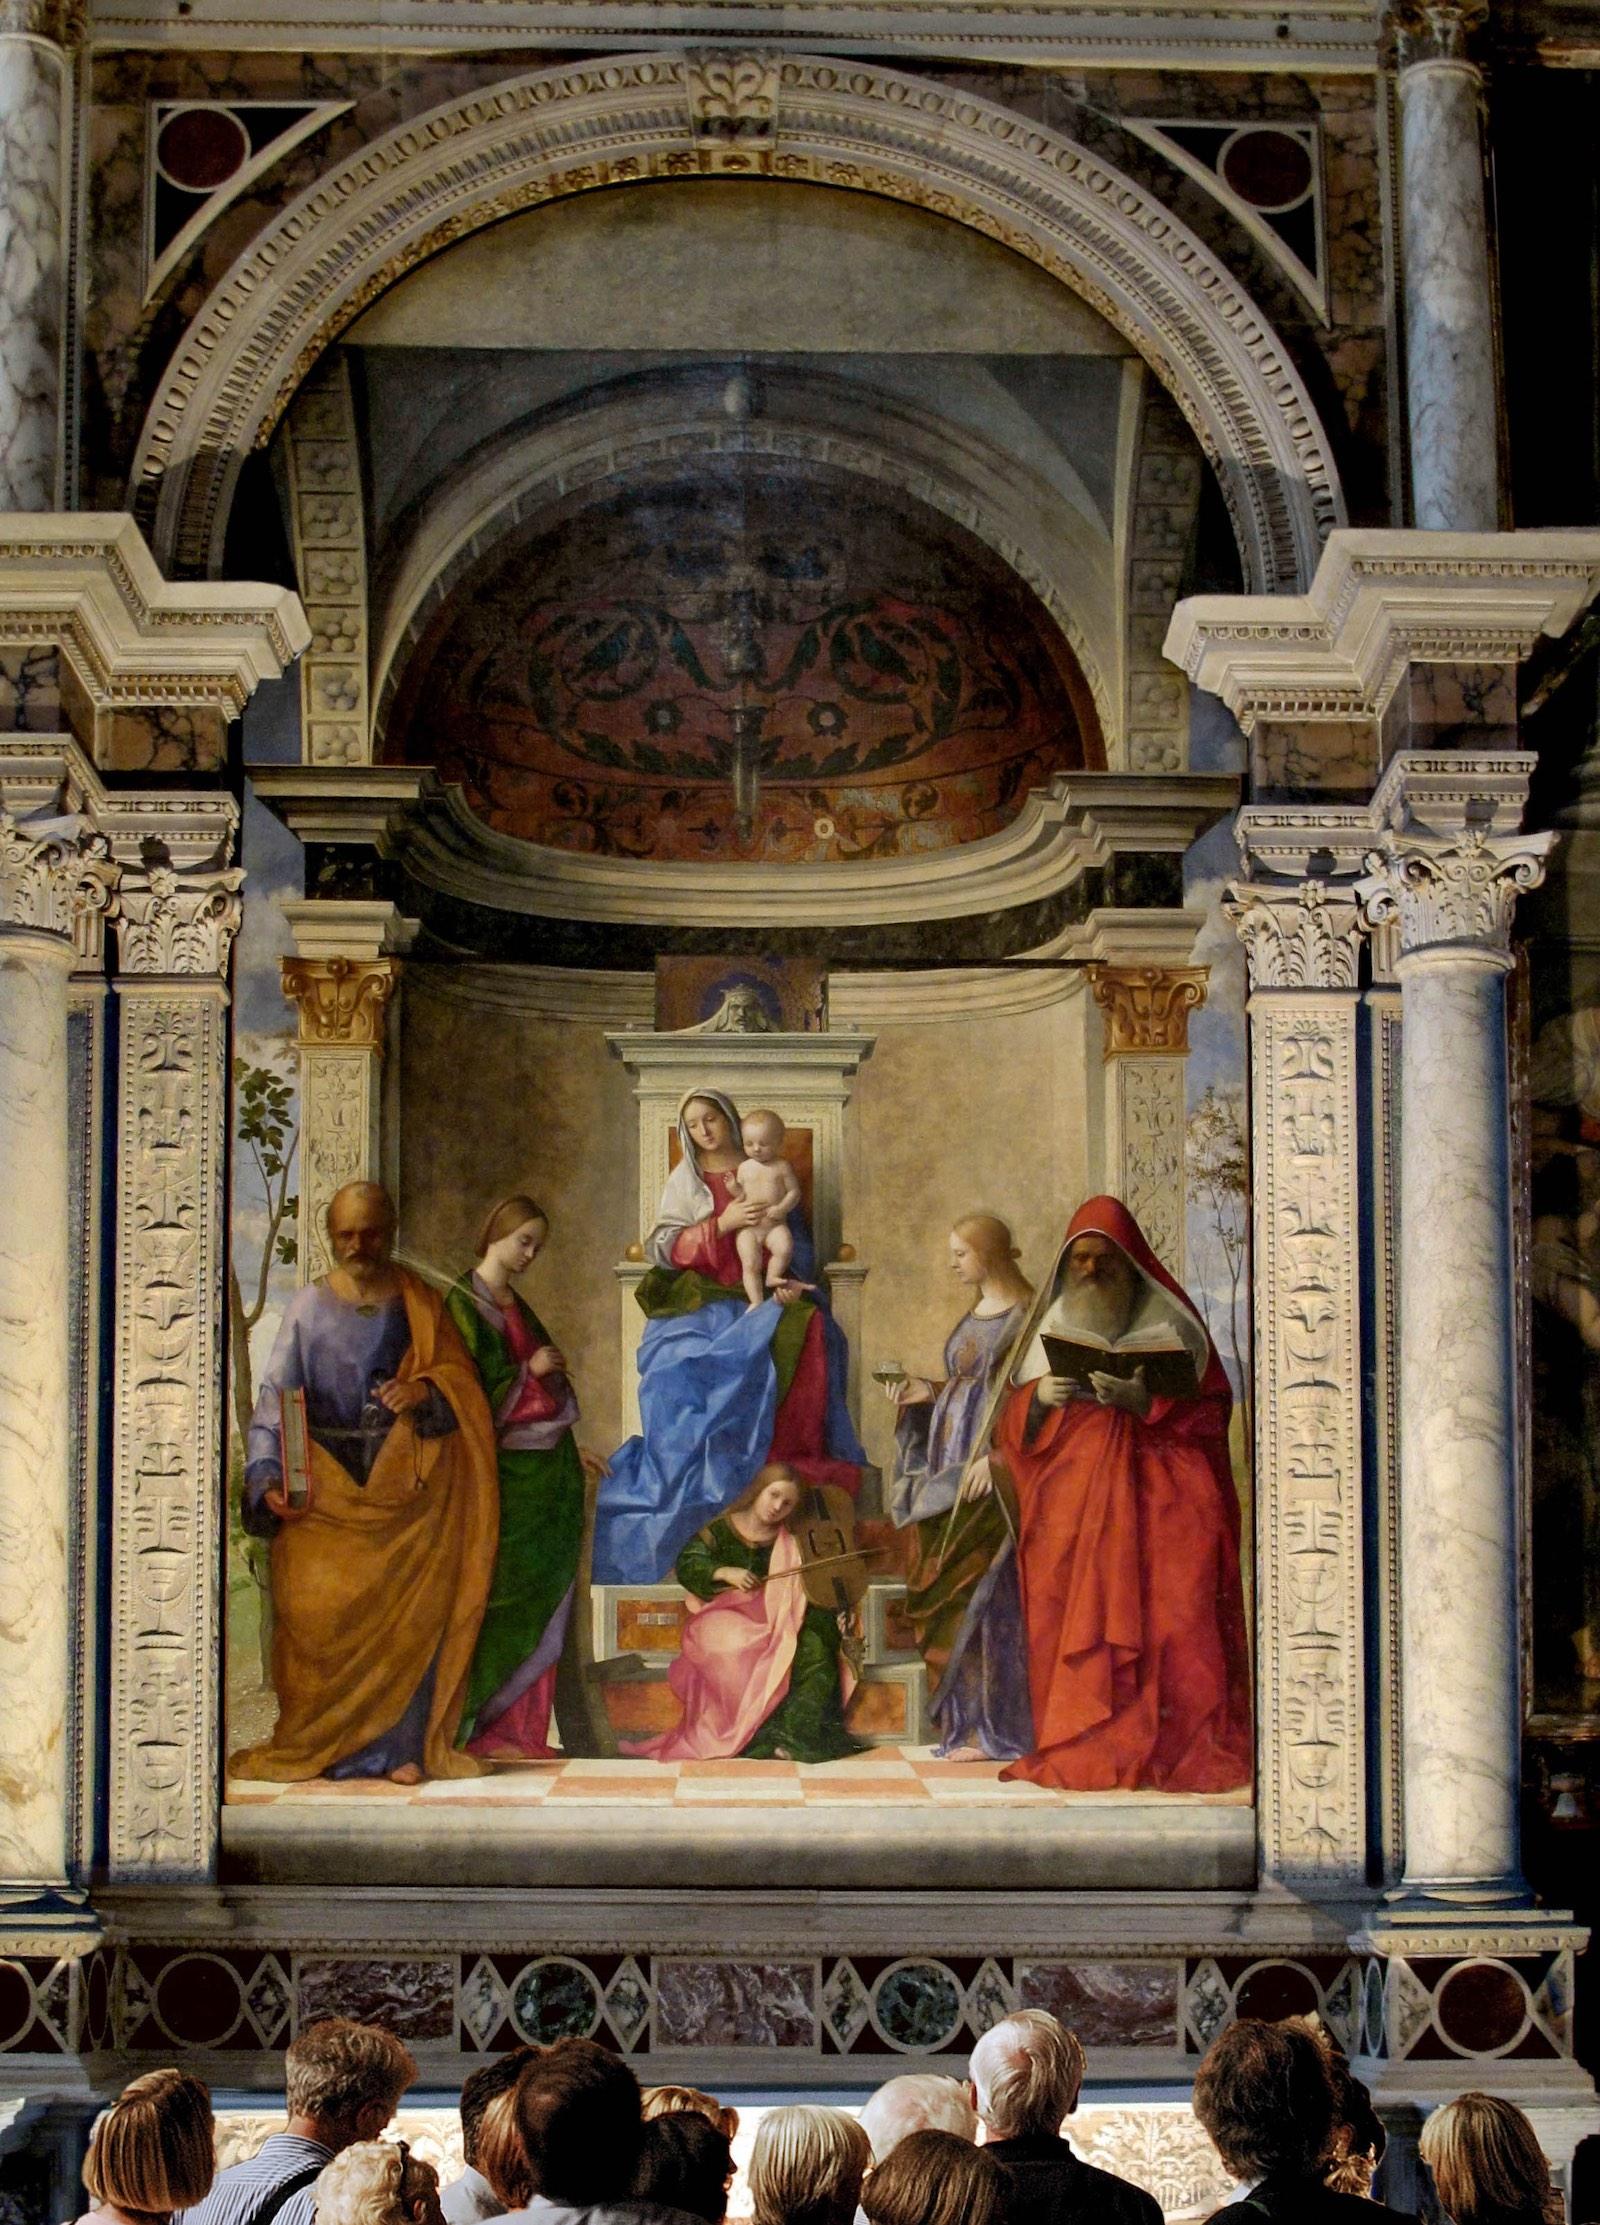 Giovanni Bellini, San Zaccaria Altarpiece, 1505. Oil on Panel. Church of San Zaccaria in Venice.